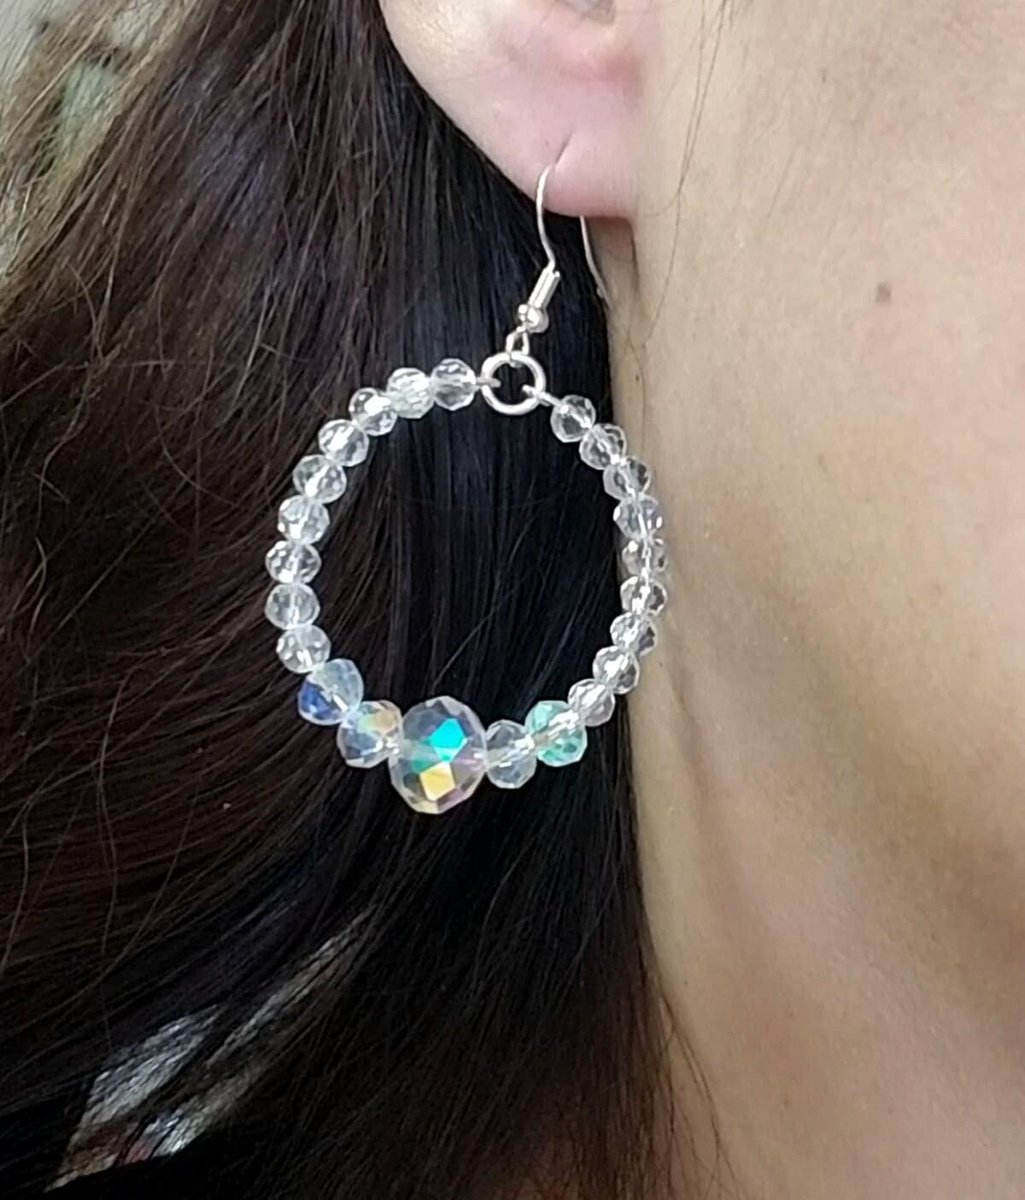 Crystal Hoop Earrings, Silver Crystal Earrings, Hoop Earrings #jewelry #earrings #Hoopearrings #crystalhoopearrings #bridaljewelry #brideearrings #Bridesmaid #handmadejewelry #giftsforher #Easter #Eastergifts #Etsy #statementearrings 

etsy.me/3Tm4bIu via @Etsy